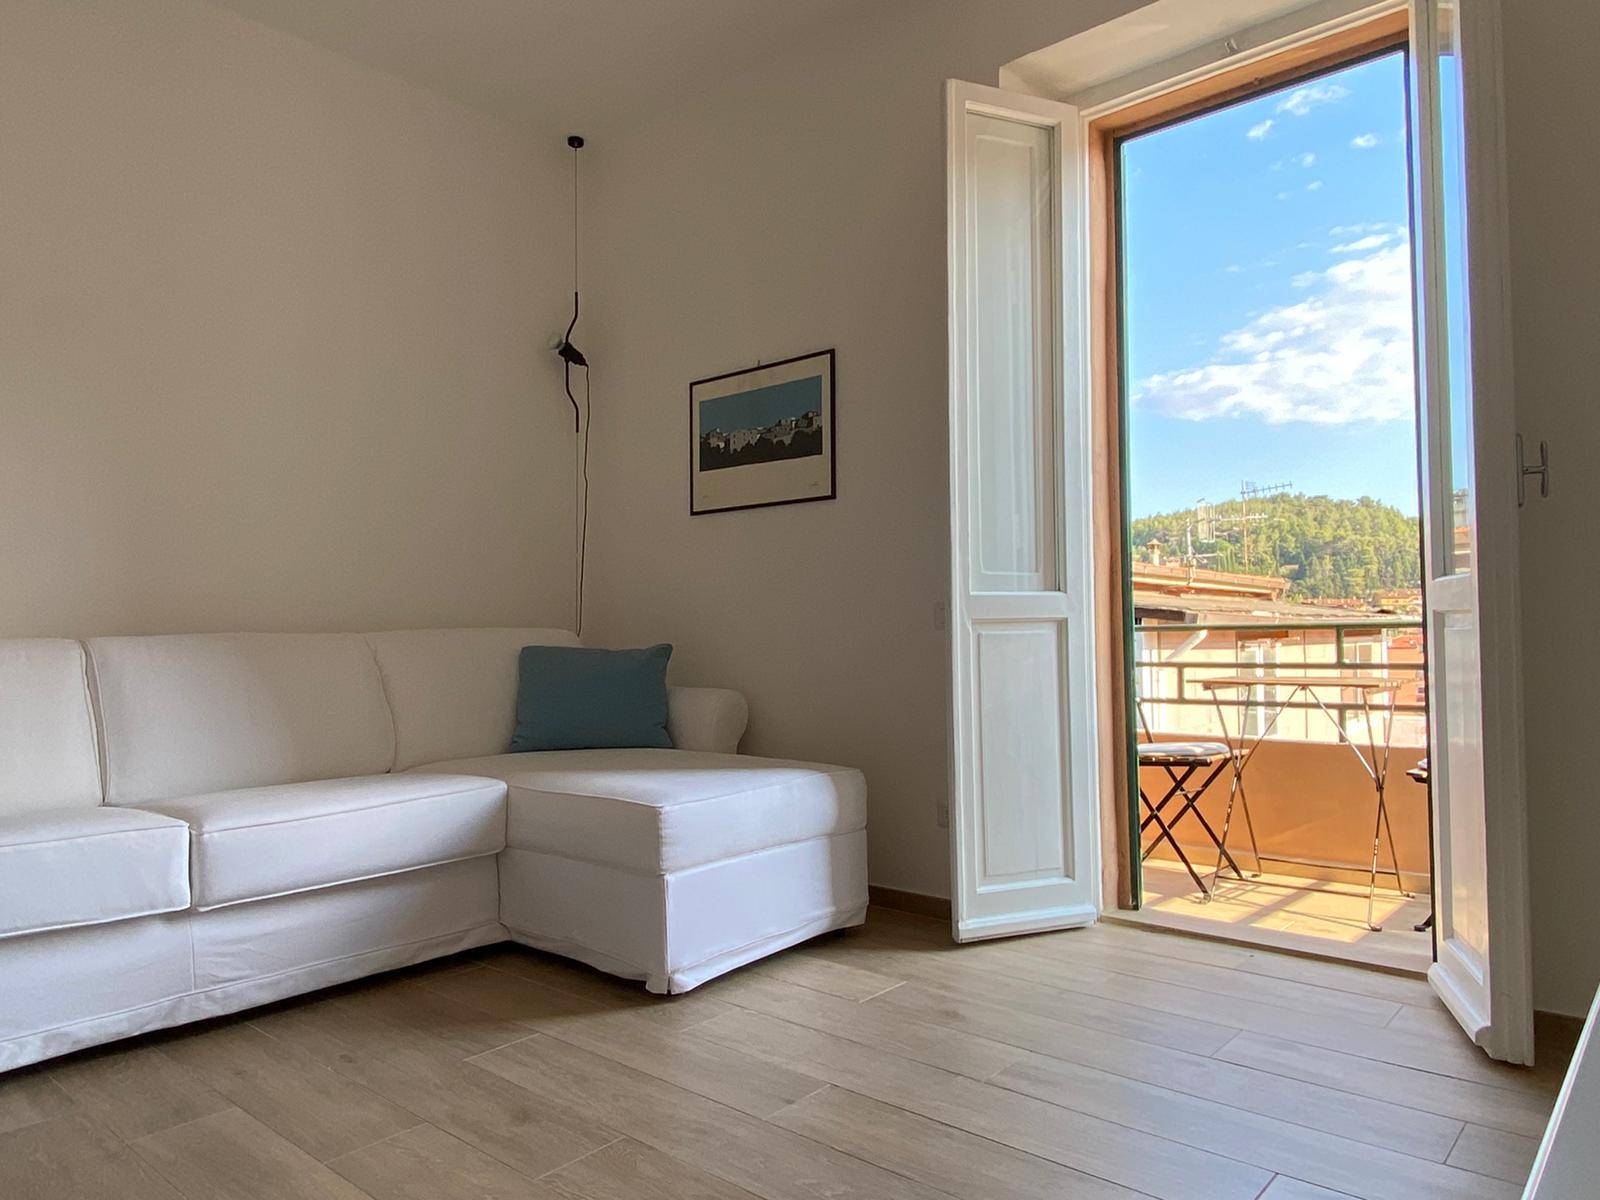 Appartamento in affitto a Monte Argentario, 3 locali, zona Località: PortoErcole, Trattative riservate | CambioCasa.it